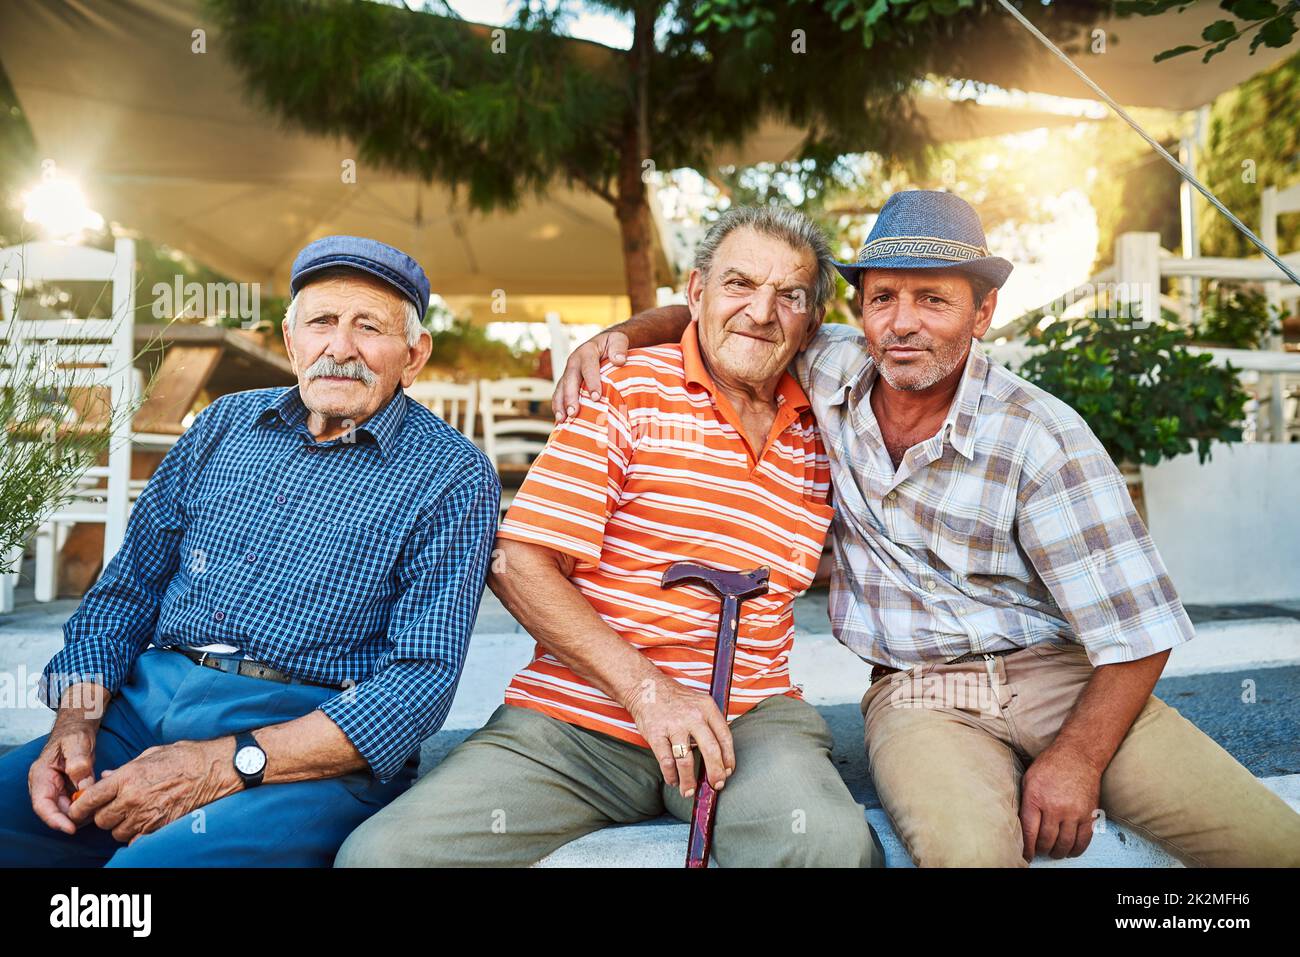 Sie sind Freunde, seit sie Kinder waren. Porträt einer Gruppe von fröhlichen älteren Männern, die zusammen sitzen, während sie draußen in die Kamera blicken. Stockfoto